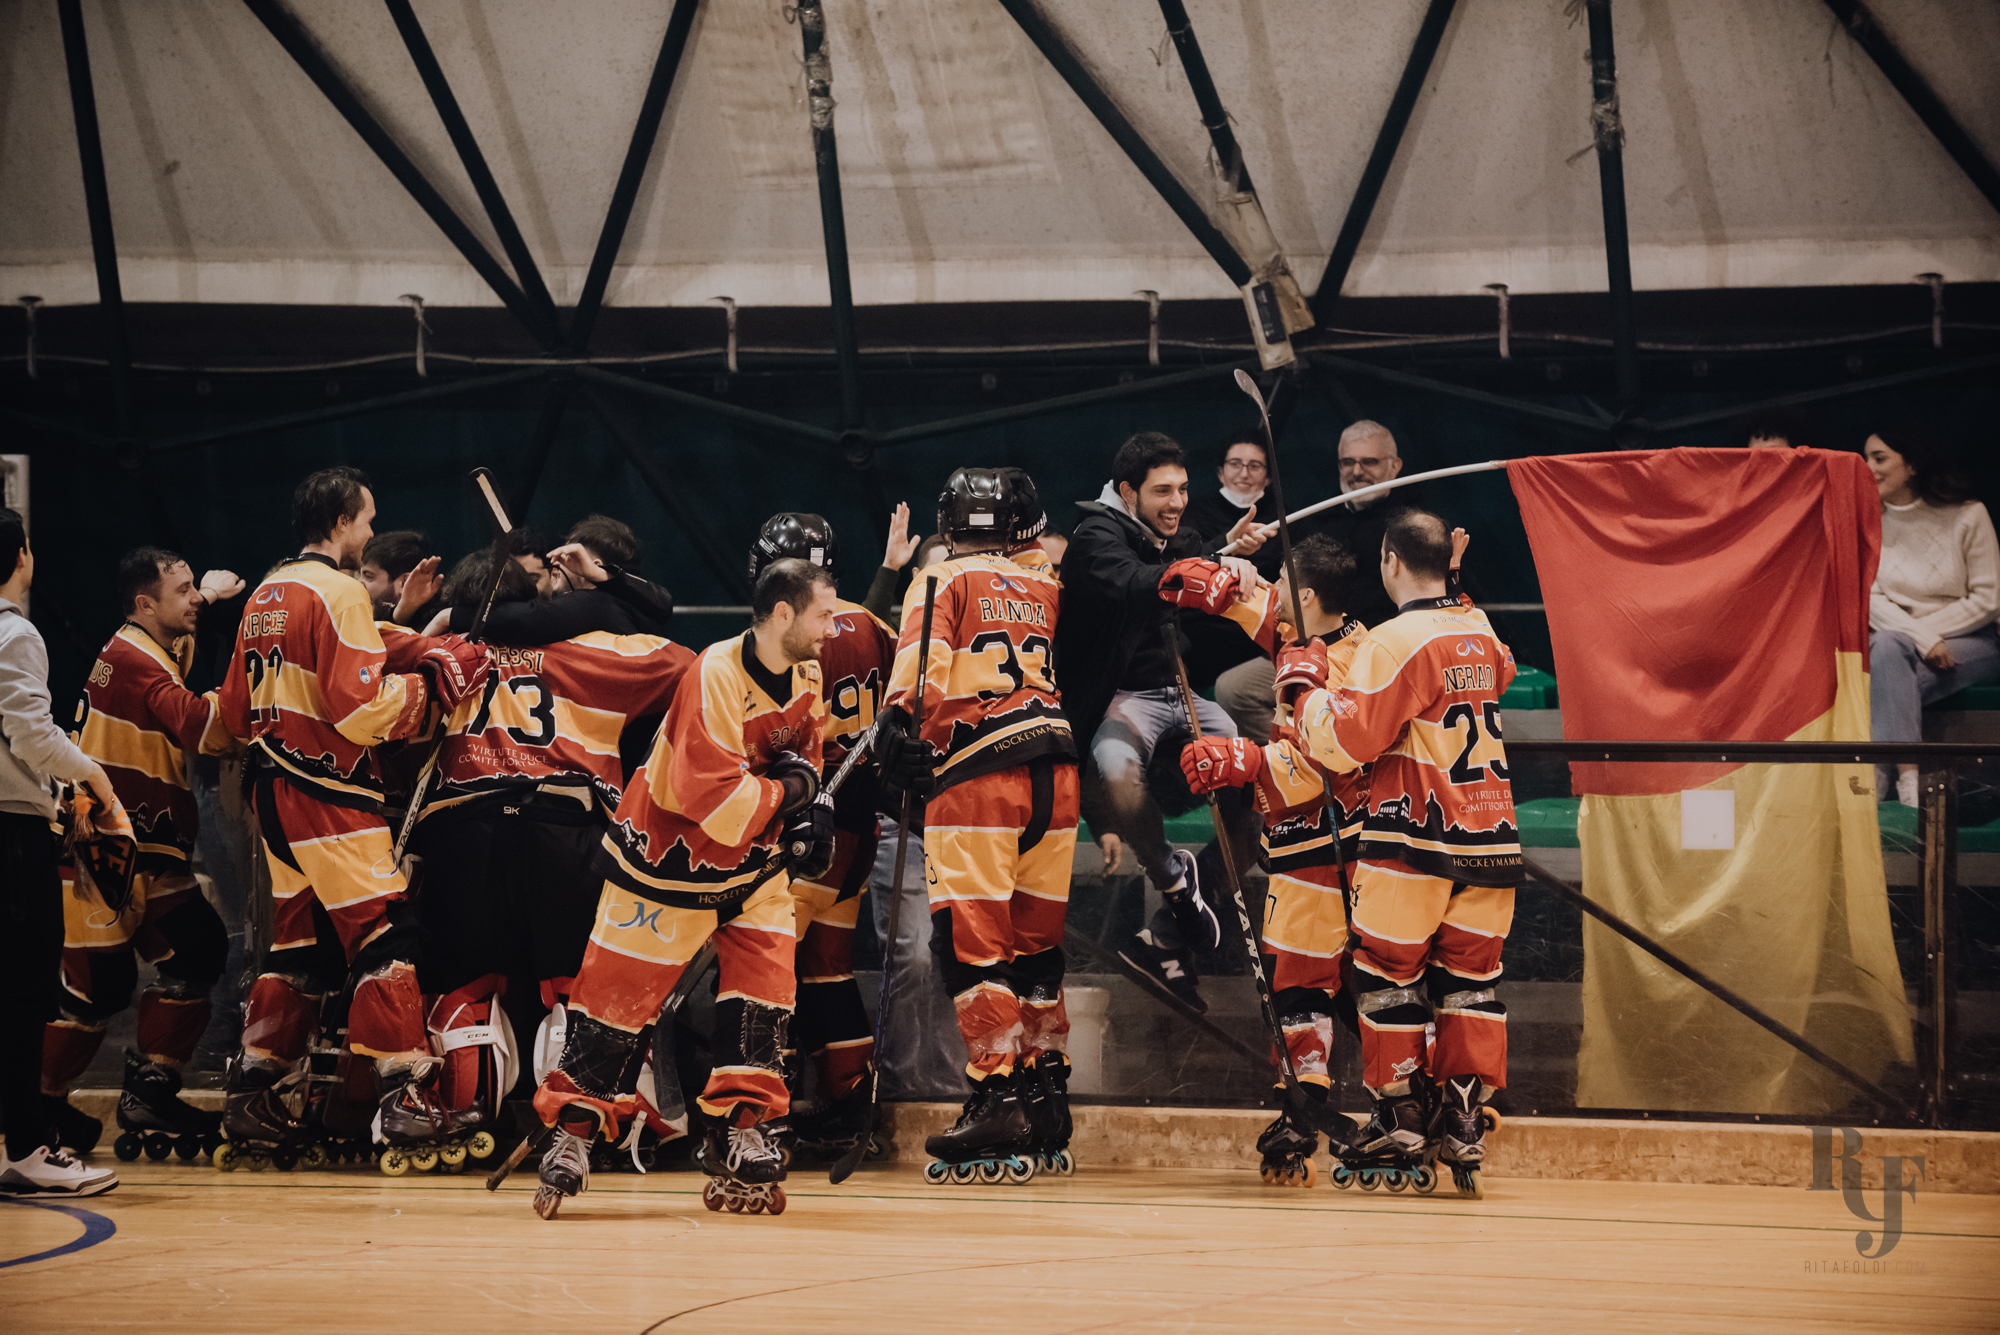 Hockey Mammuth, hockey e pattinaggio a roma, hockey giovanile, Mammuth Roma, Mammuth hockey roma, Fox Legnaro, sports photo, FISR, inline hockey, Rita Foldi photo